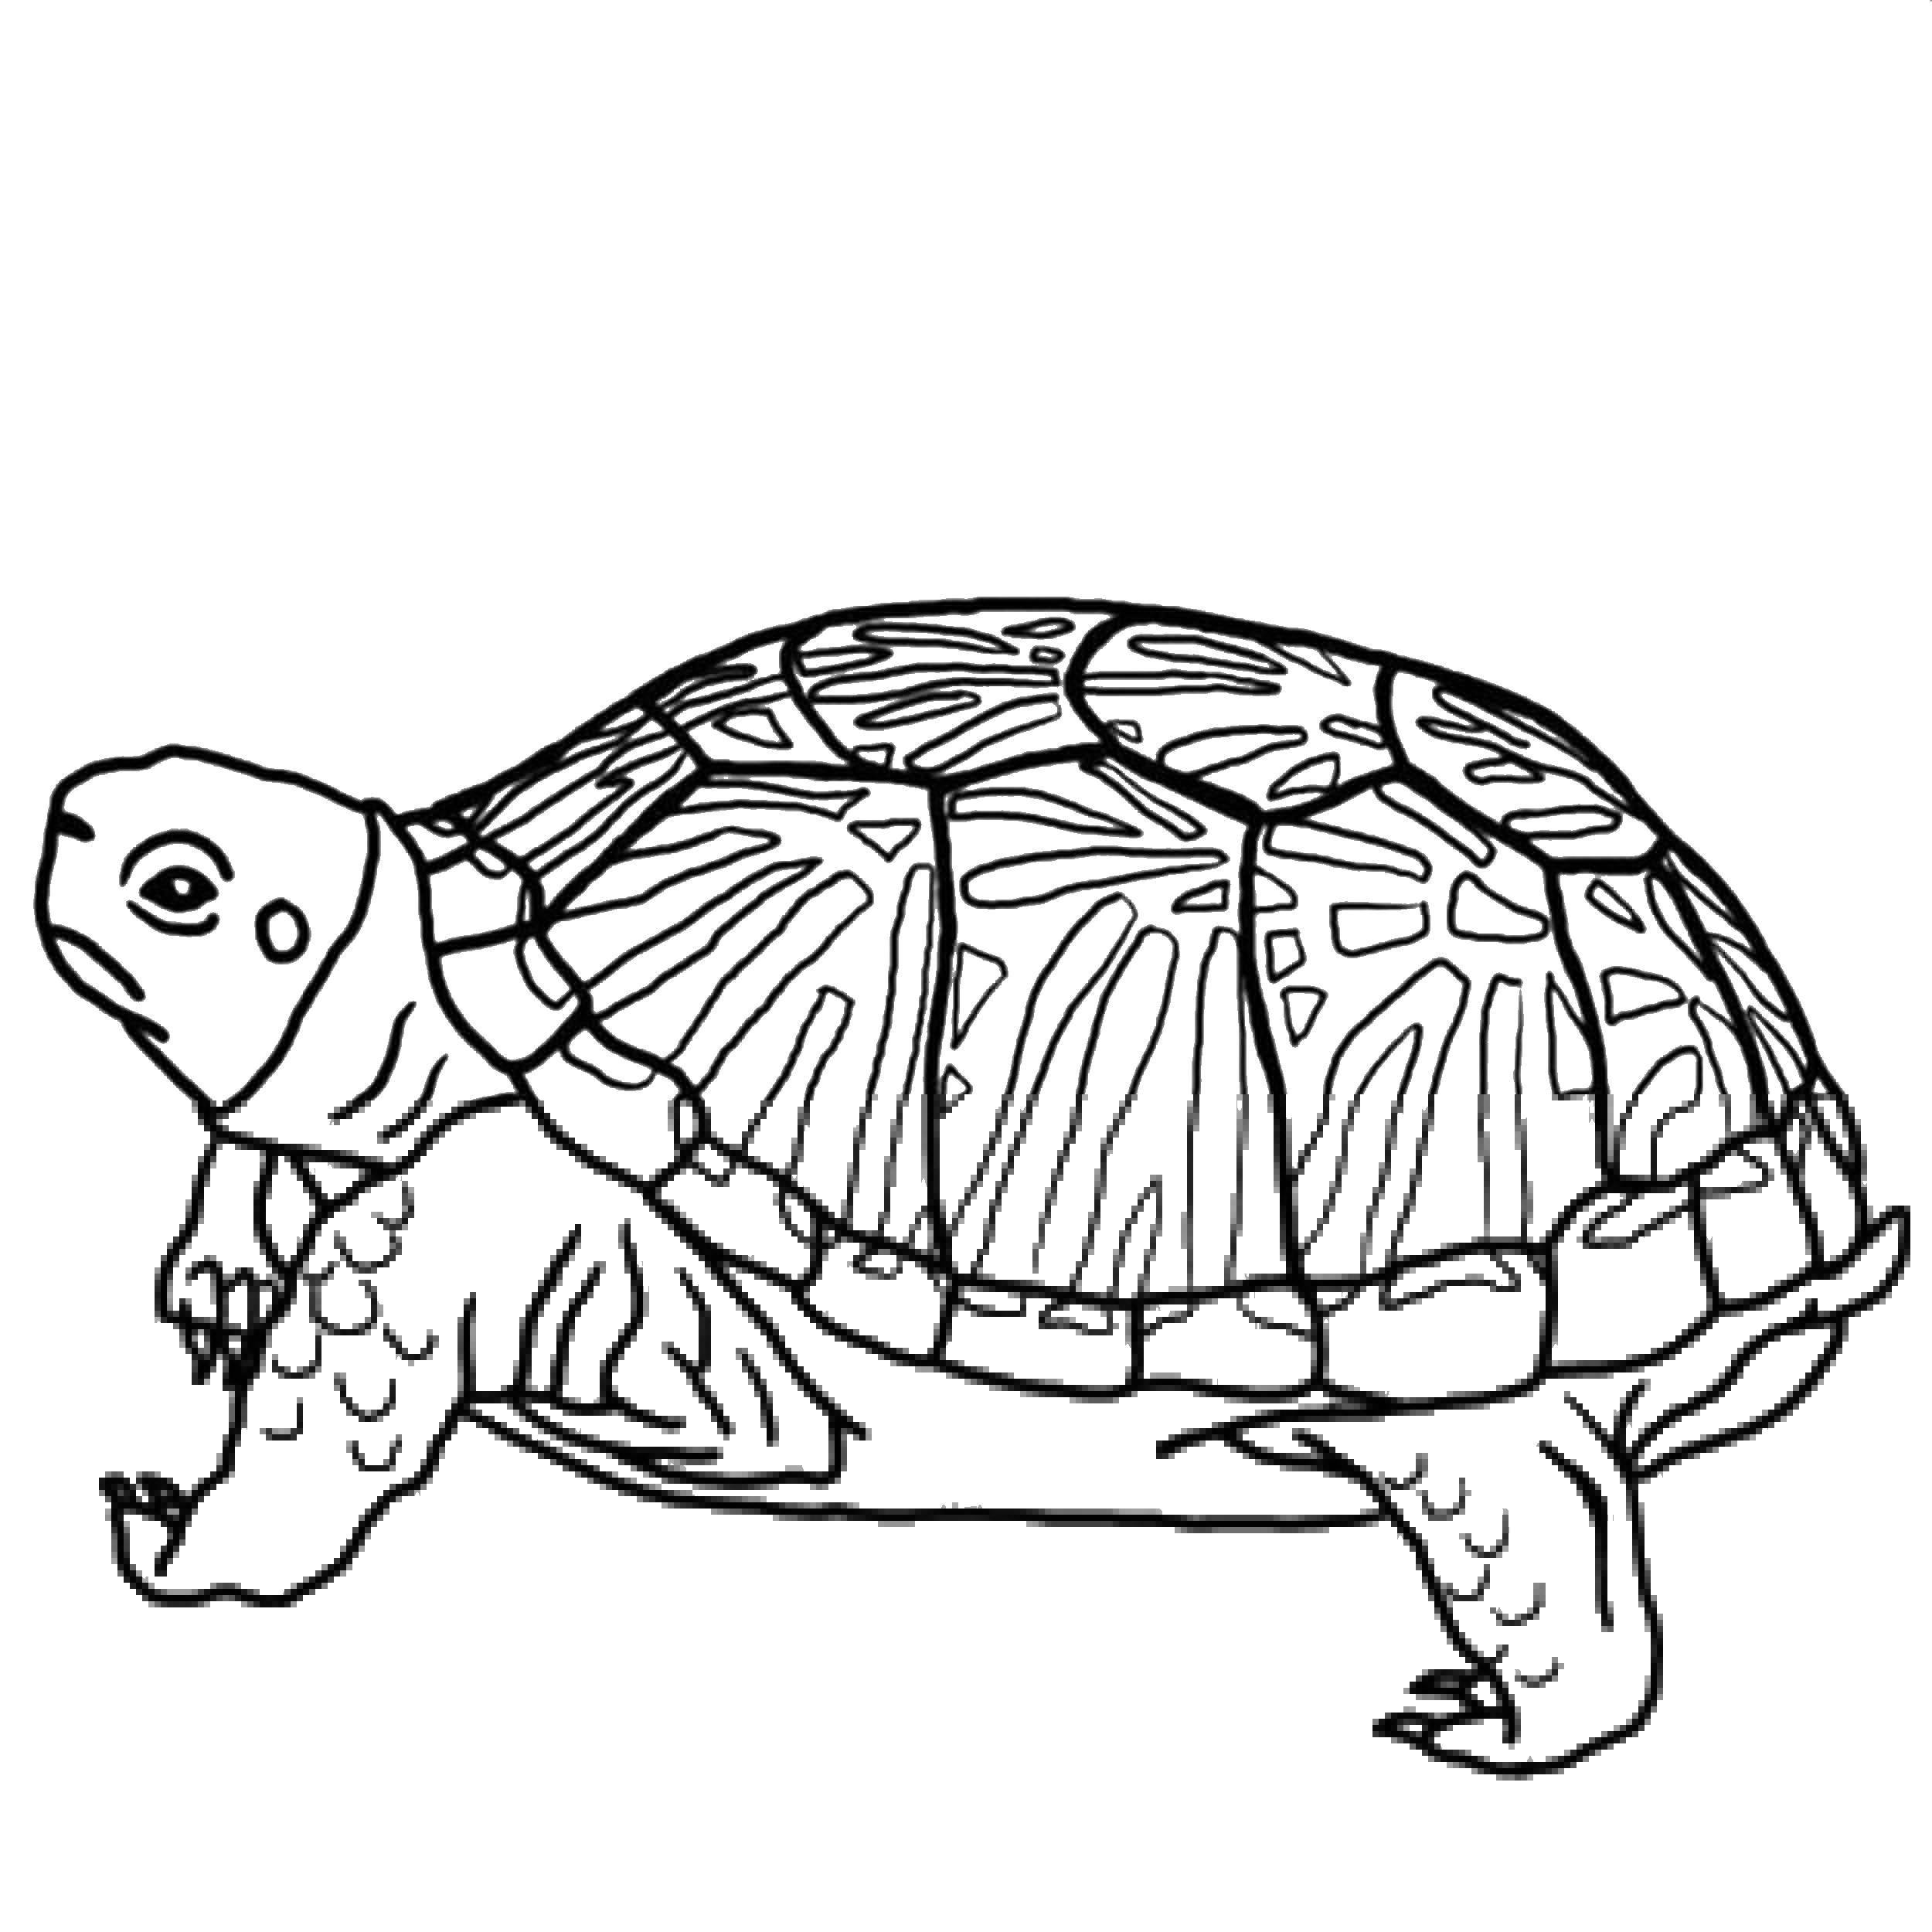 Название: Раскраска Морская черепаха. Категория: раскраски. Теги: черепашка, черепаха, морская черепашка.